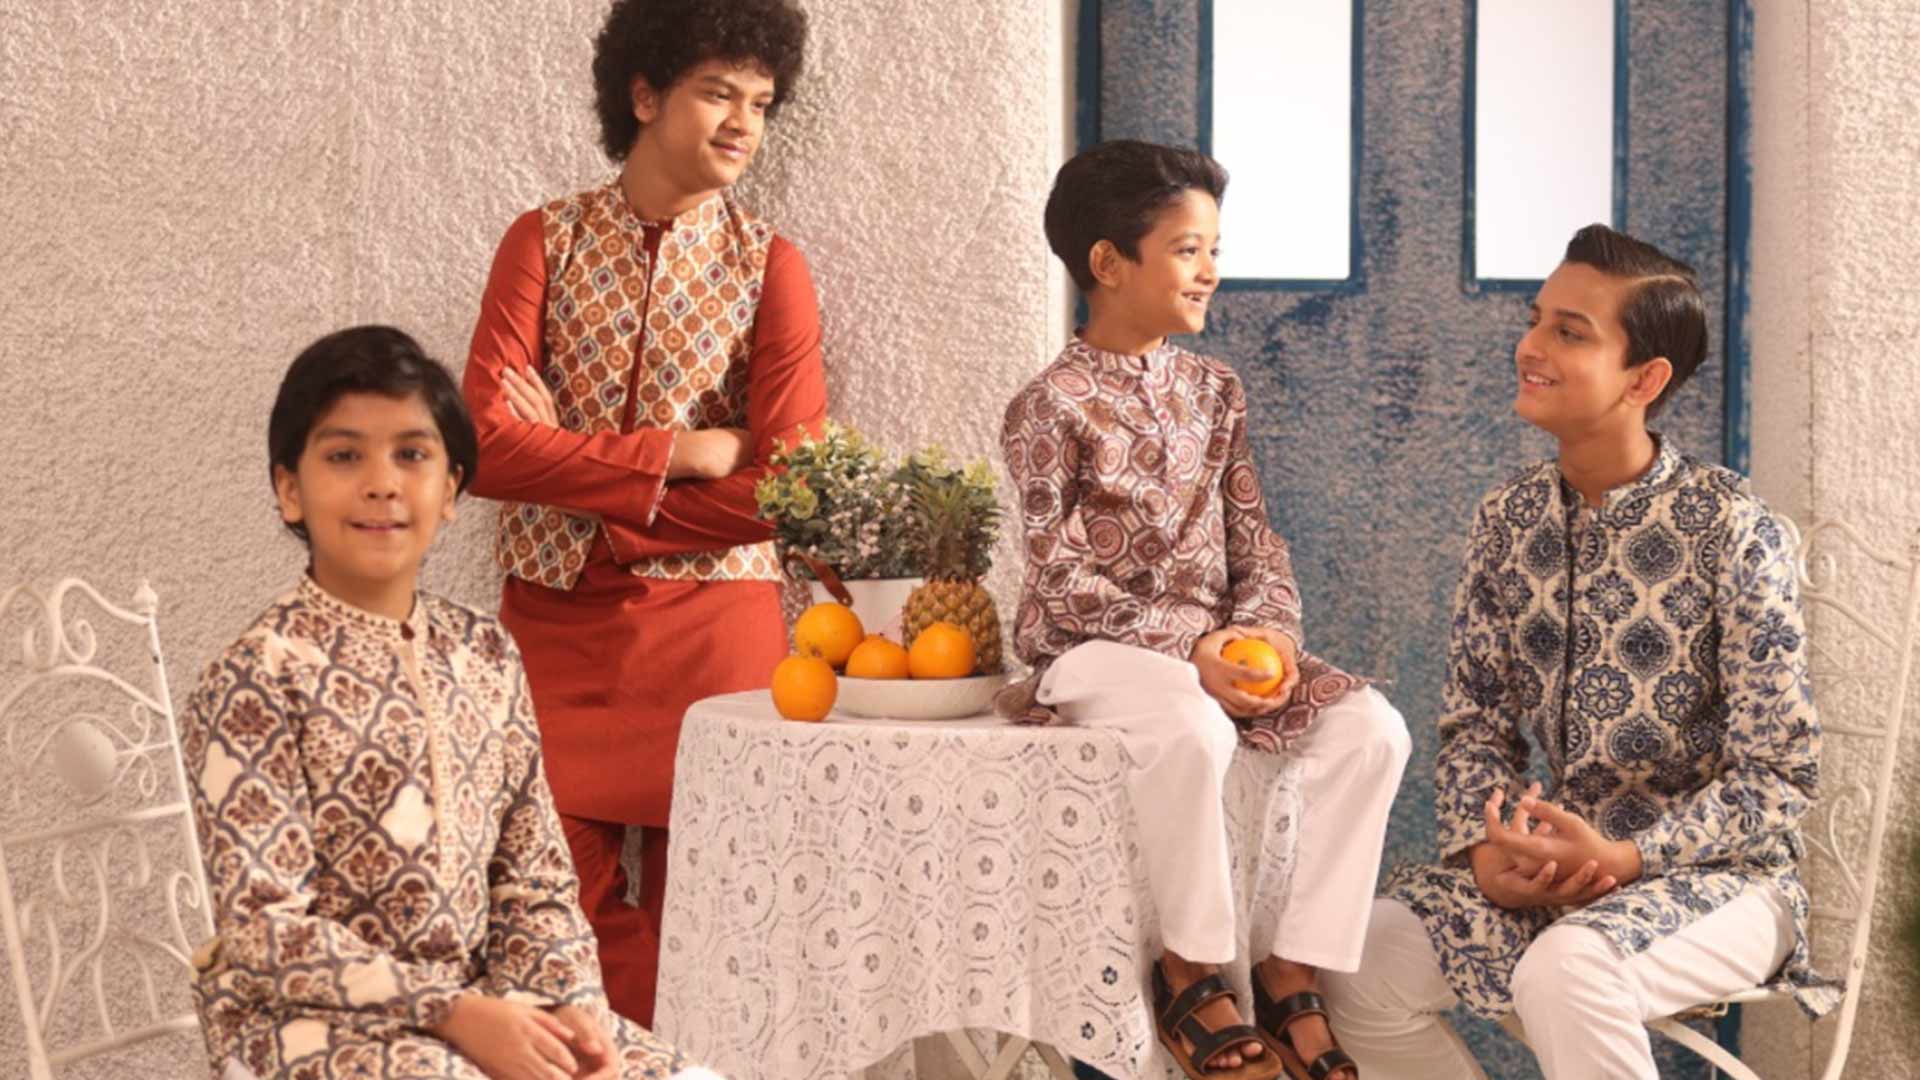 Children’s Eid fashion